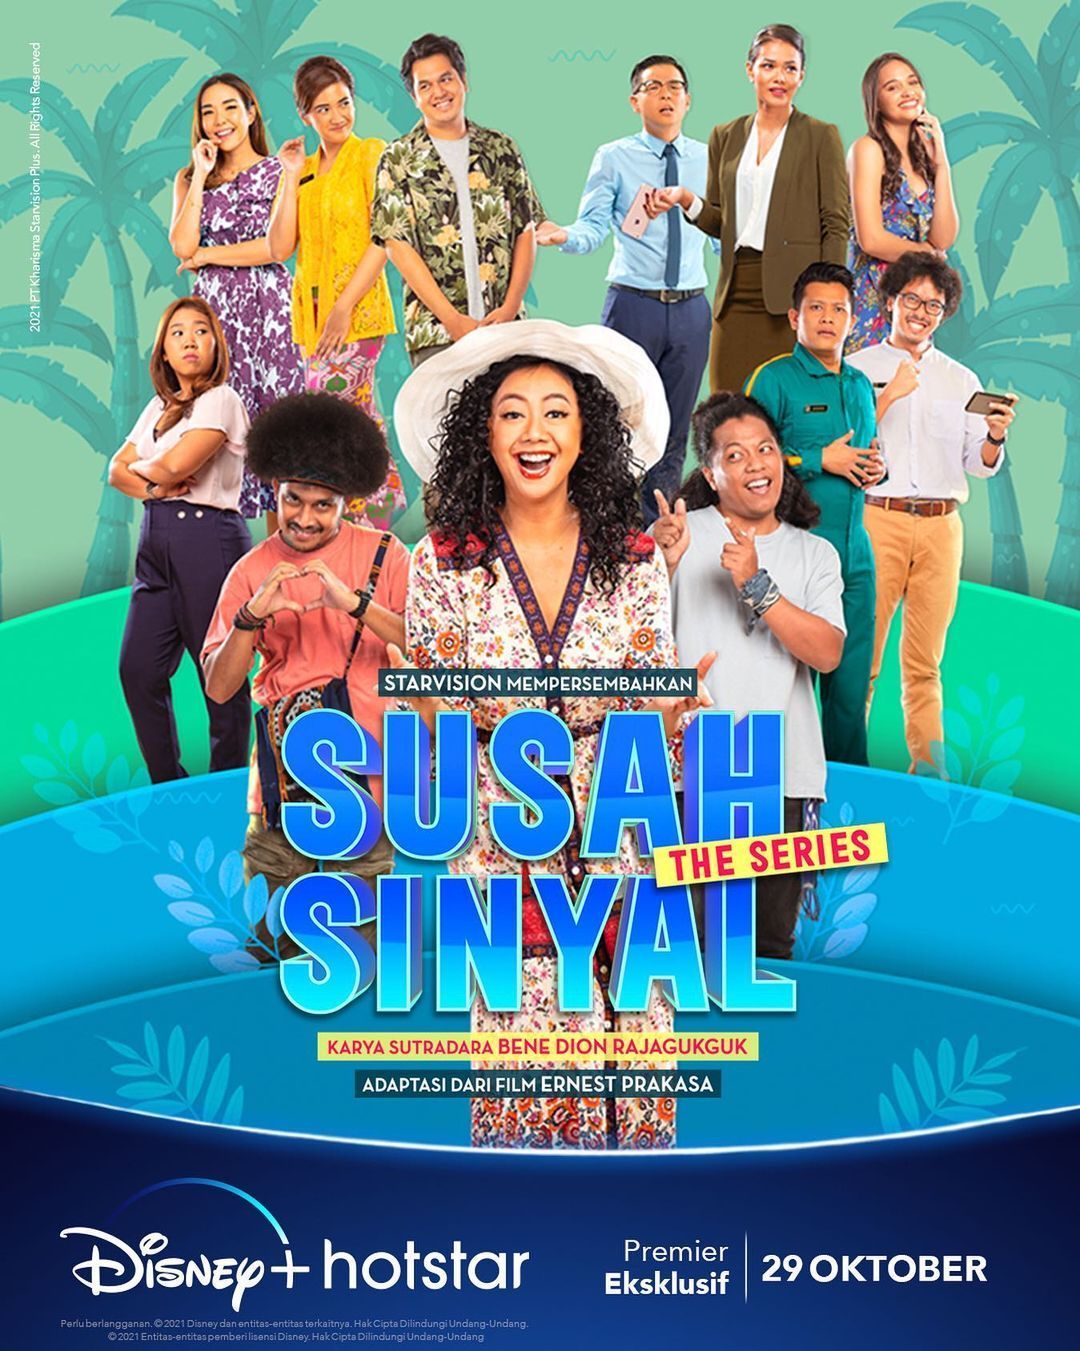 TV ratings for Susah Sinyal: The Series in Argentina. Disney+ TV series